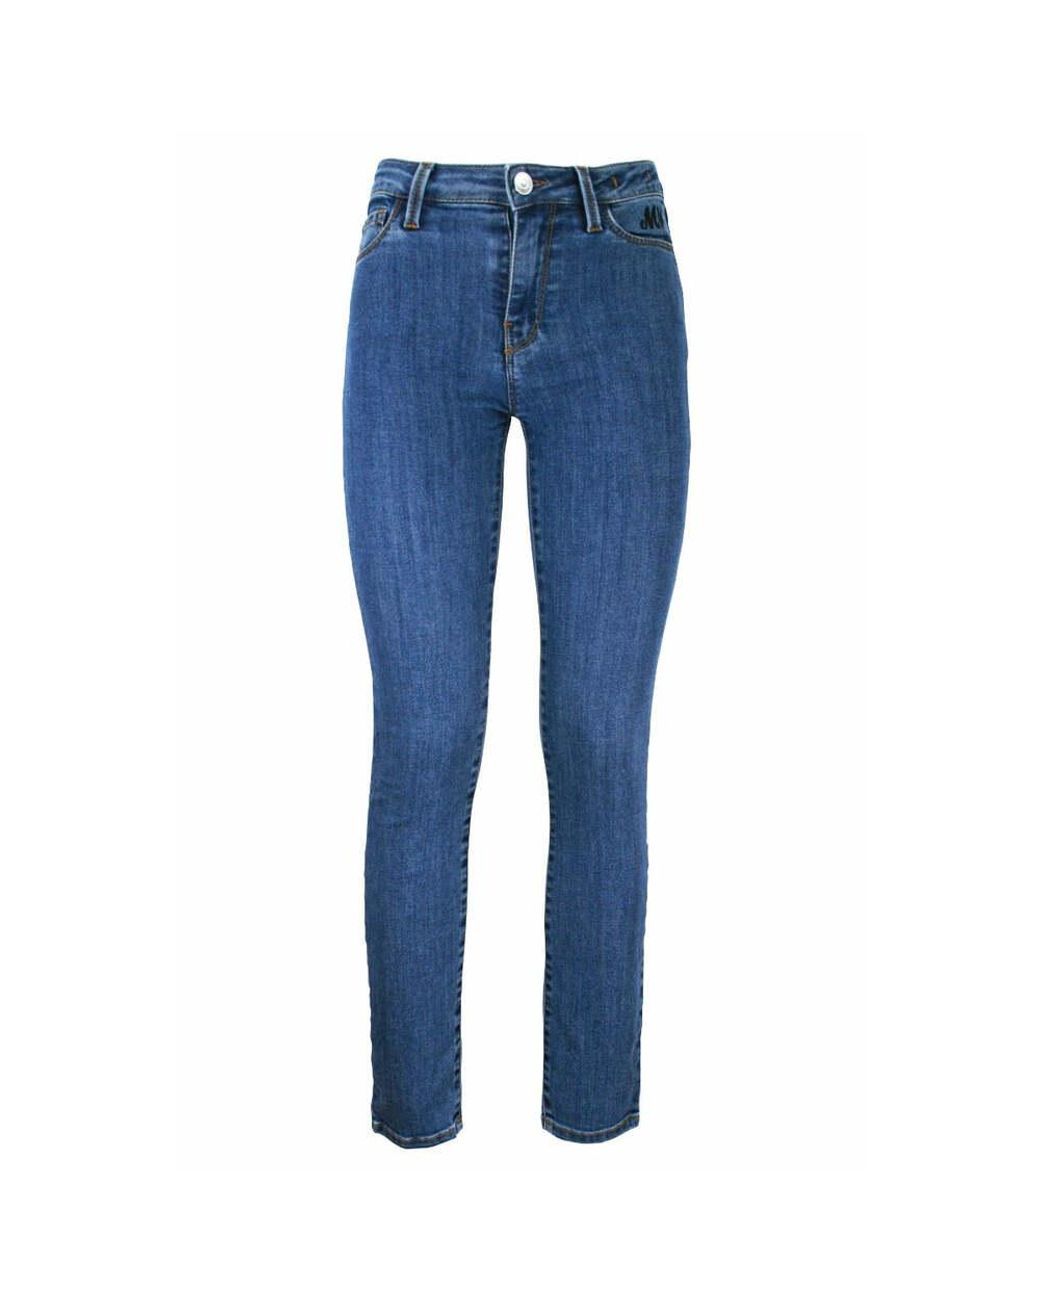 Femme Vêtements Shorts Shorts fluides/cargo Short en jean Jean Manila Grace en coloris Bleu 